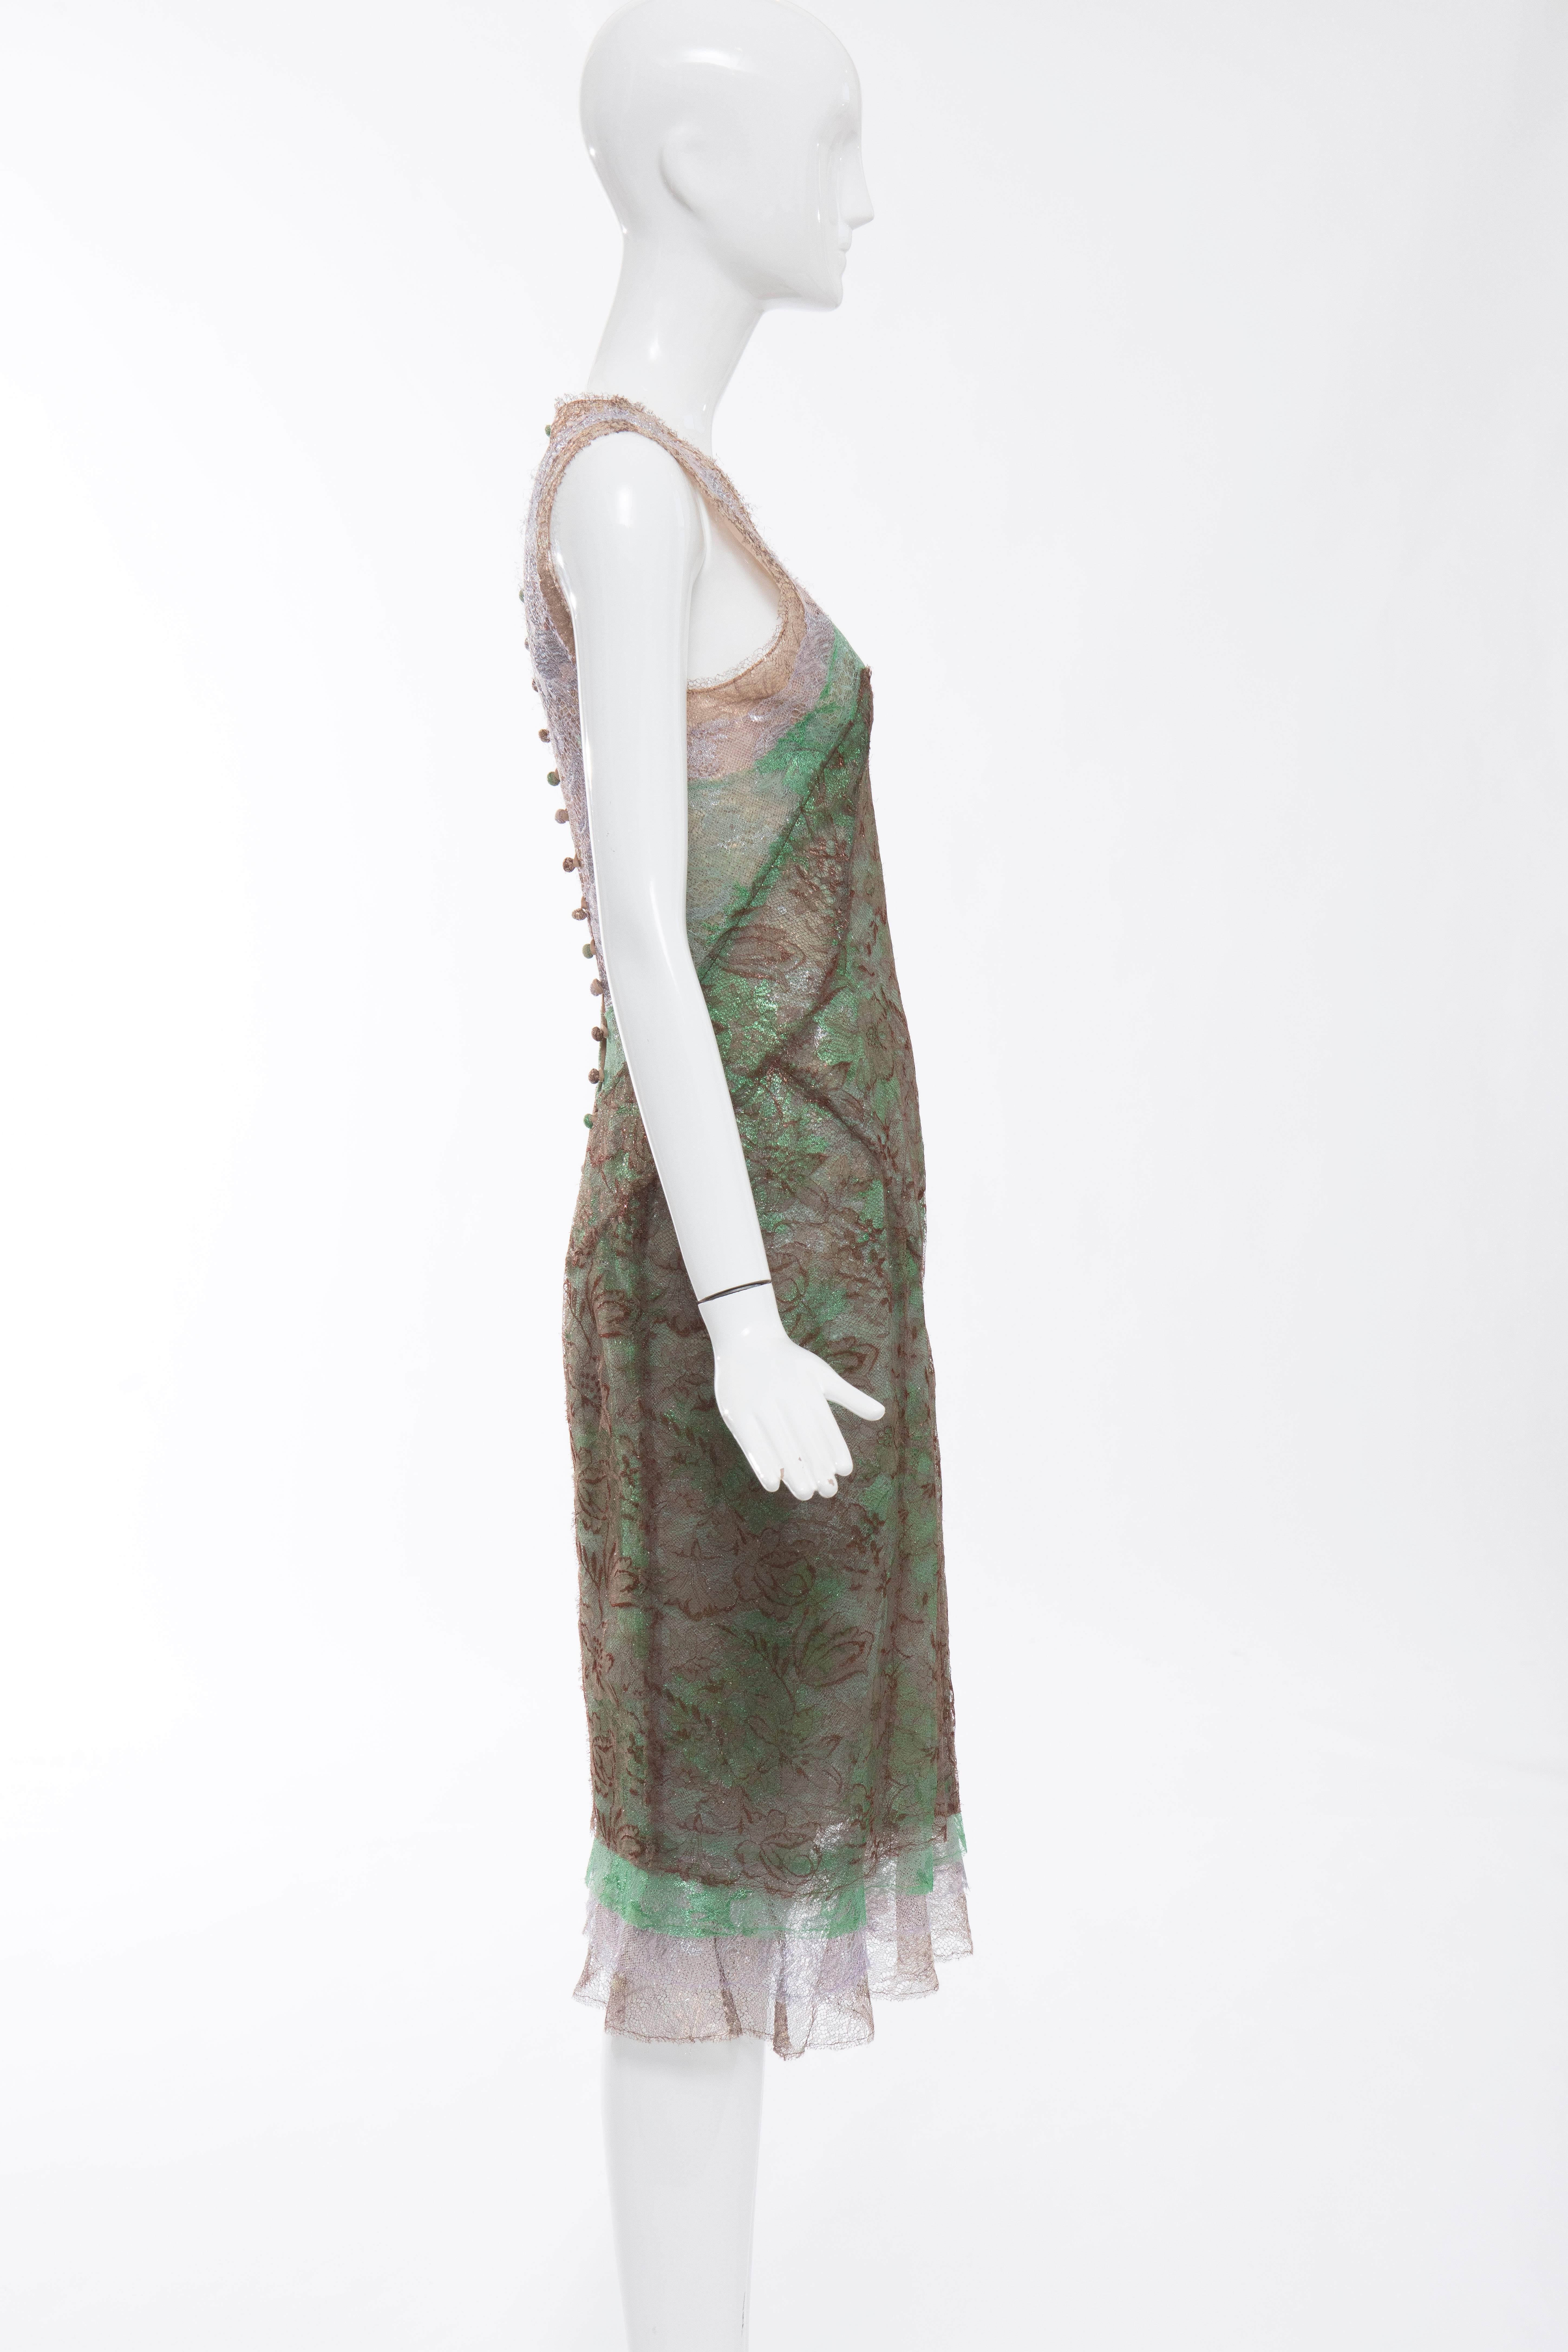 Zac Posen Sleeveless Layered Metallic Lace Evening Dress, Fall 2004 2